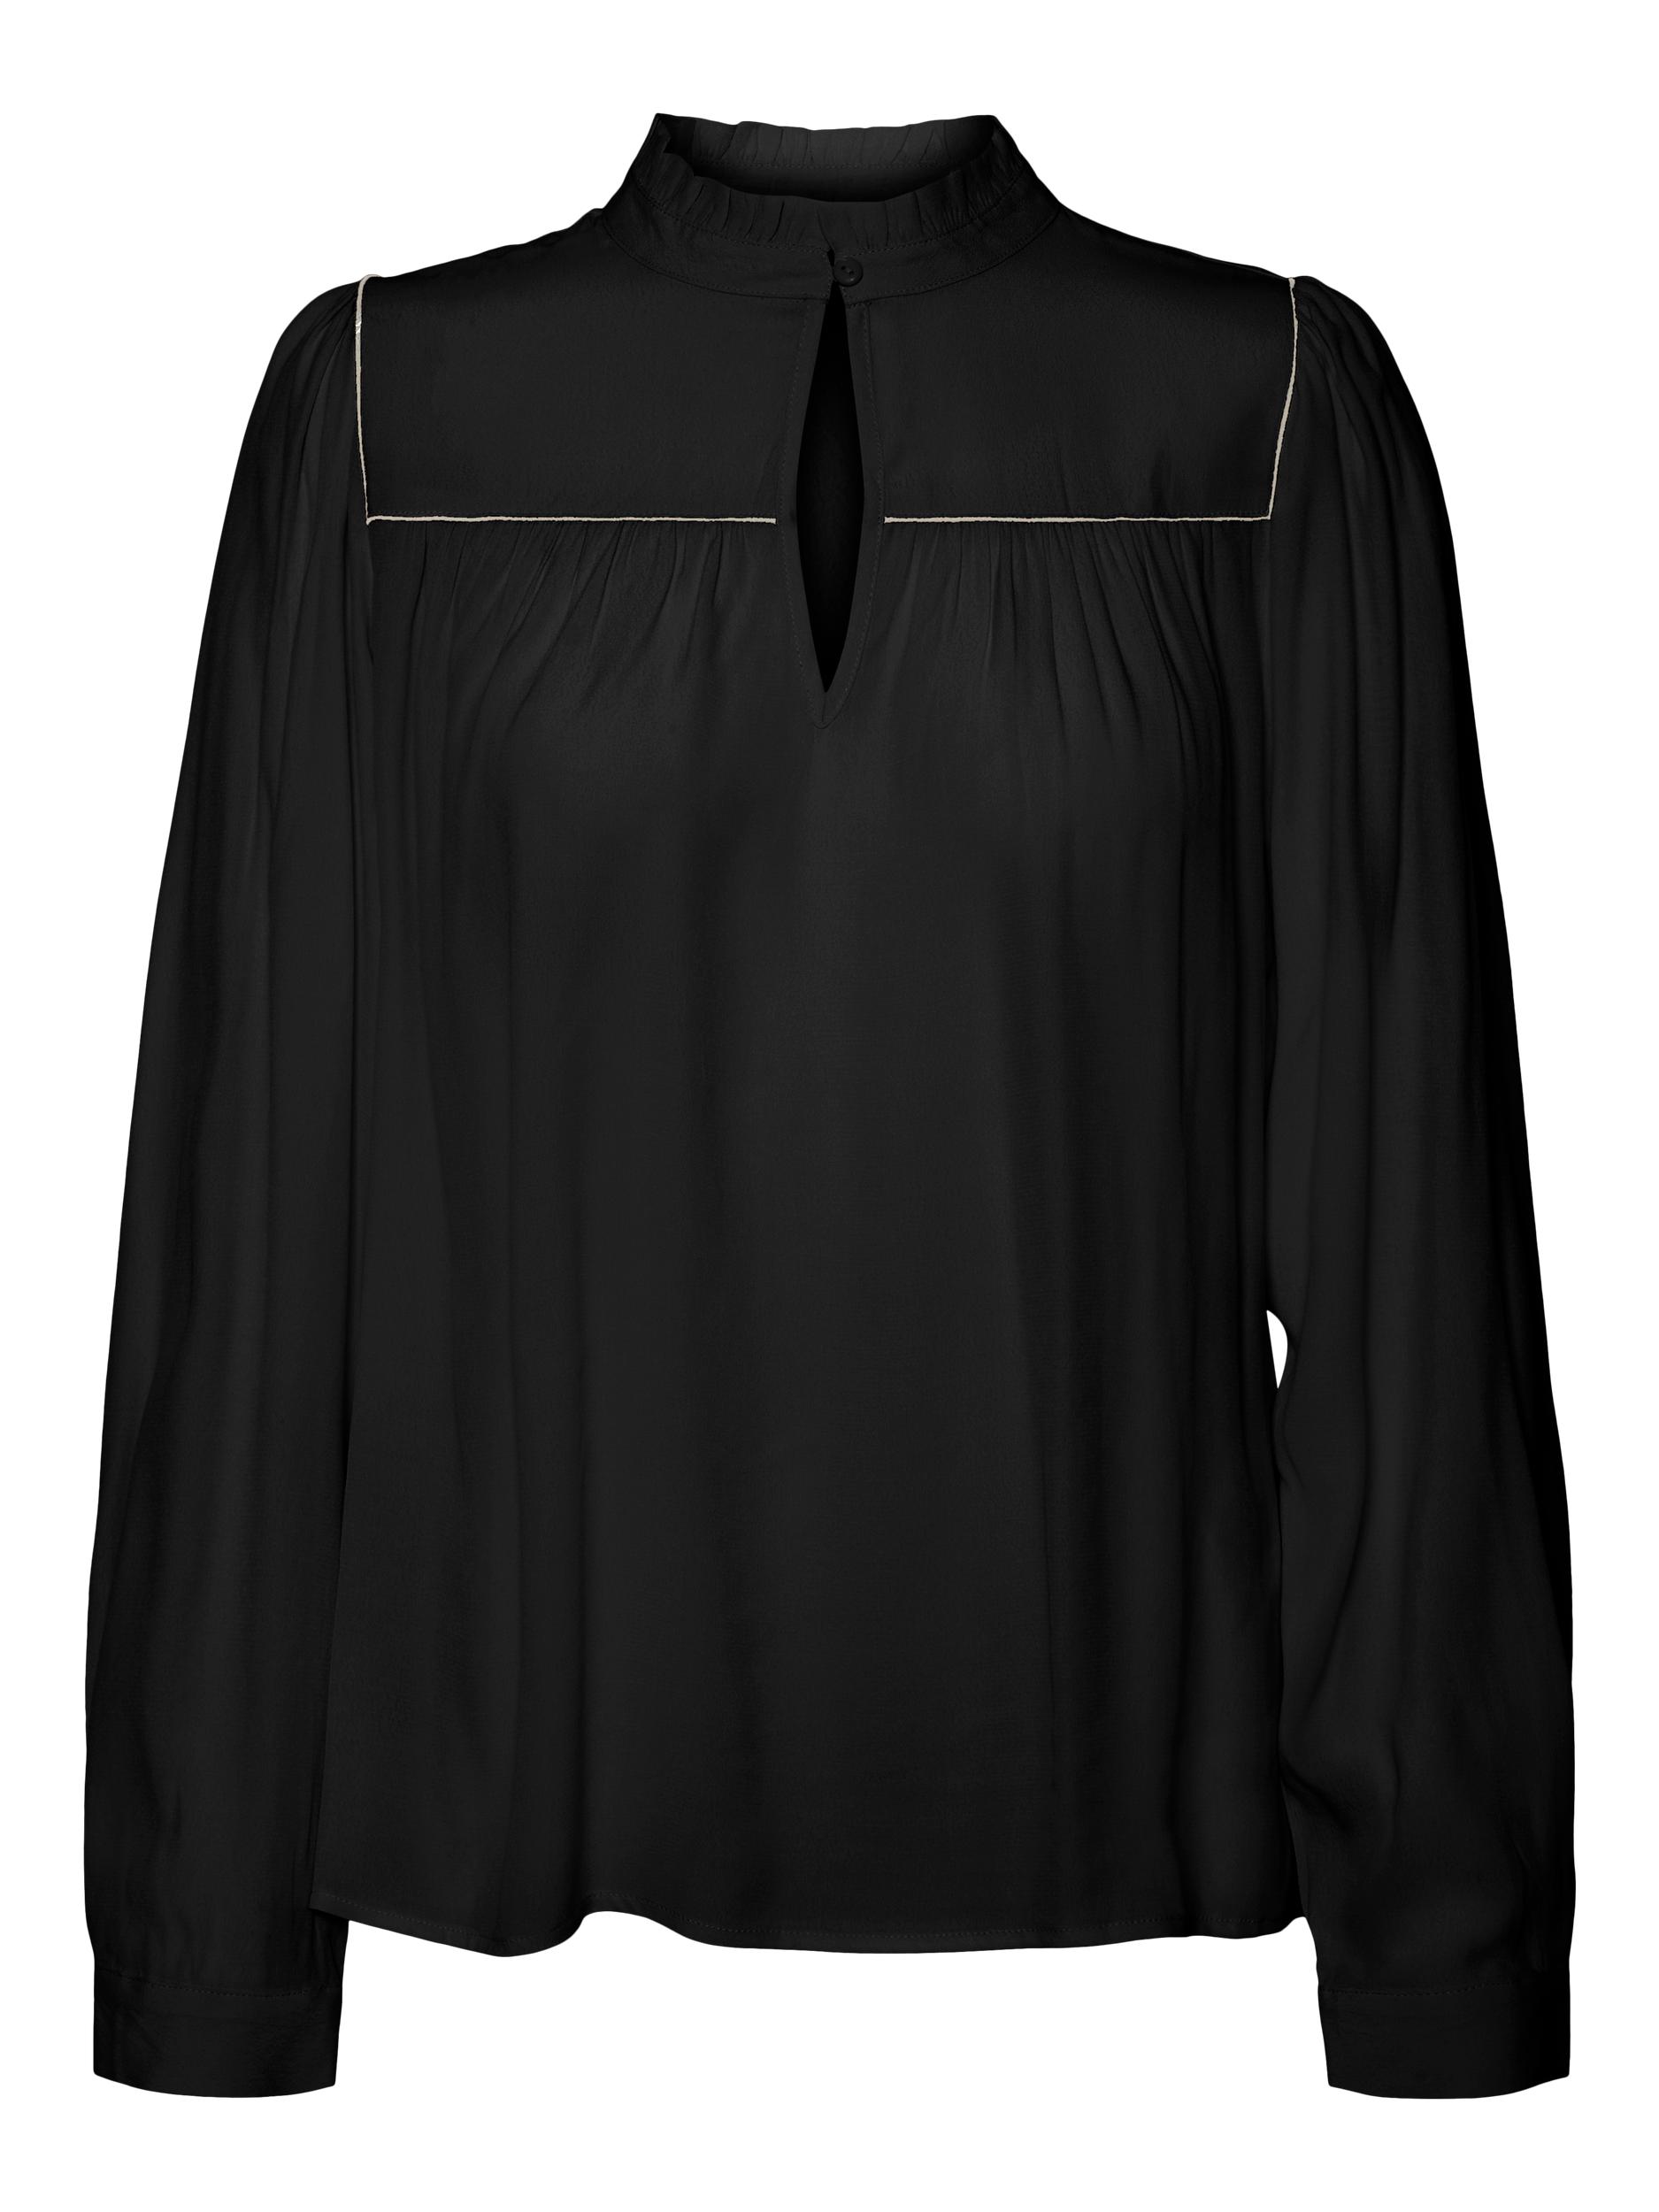 Odzież Bardziej zrównoważony VERO MODA Bluzka Asther w kolorze Czarnym 